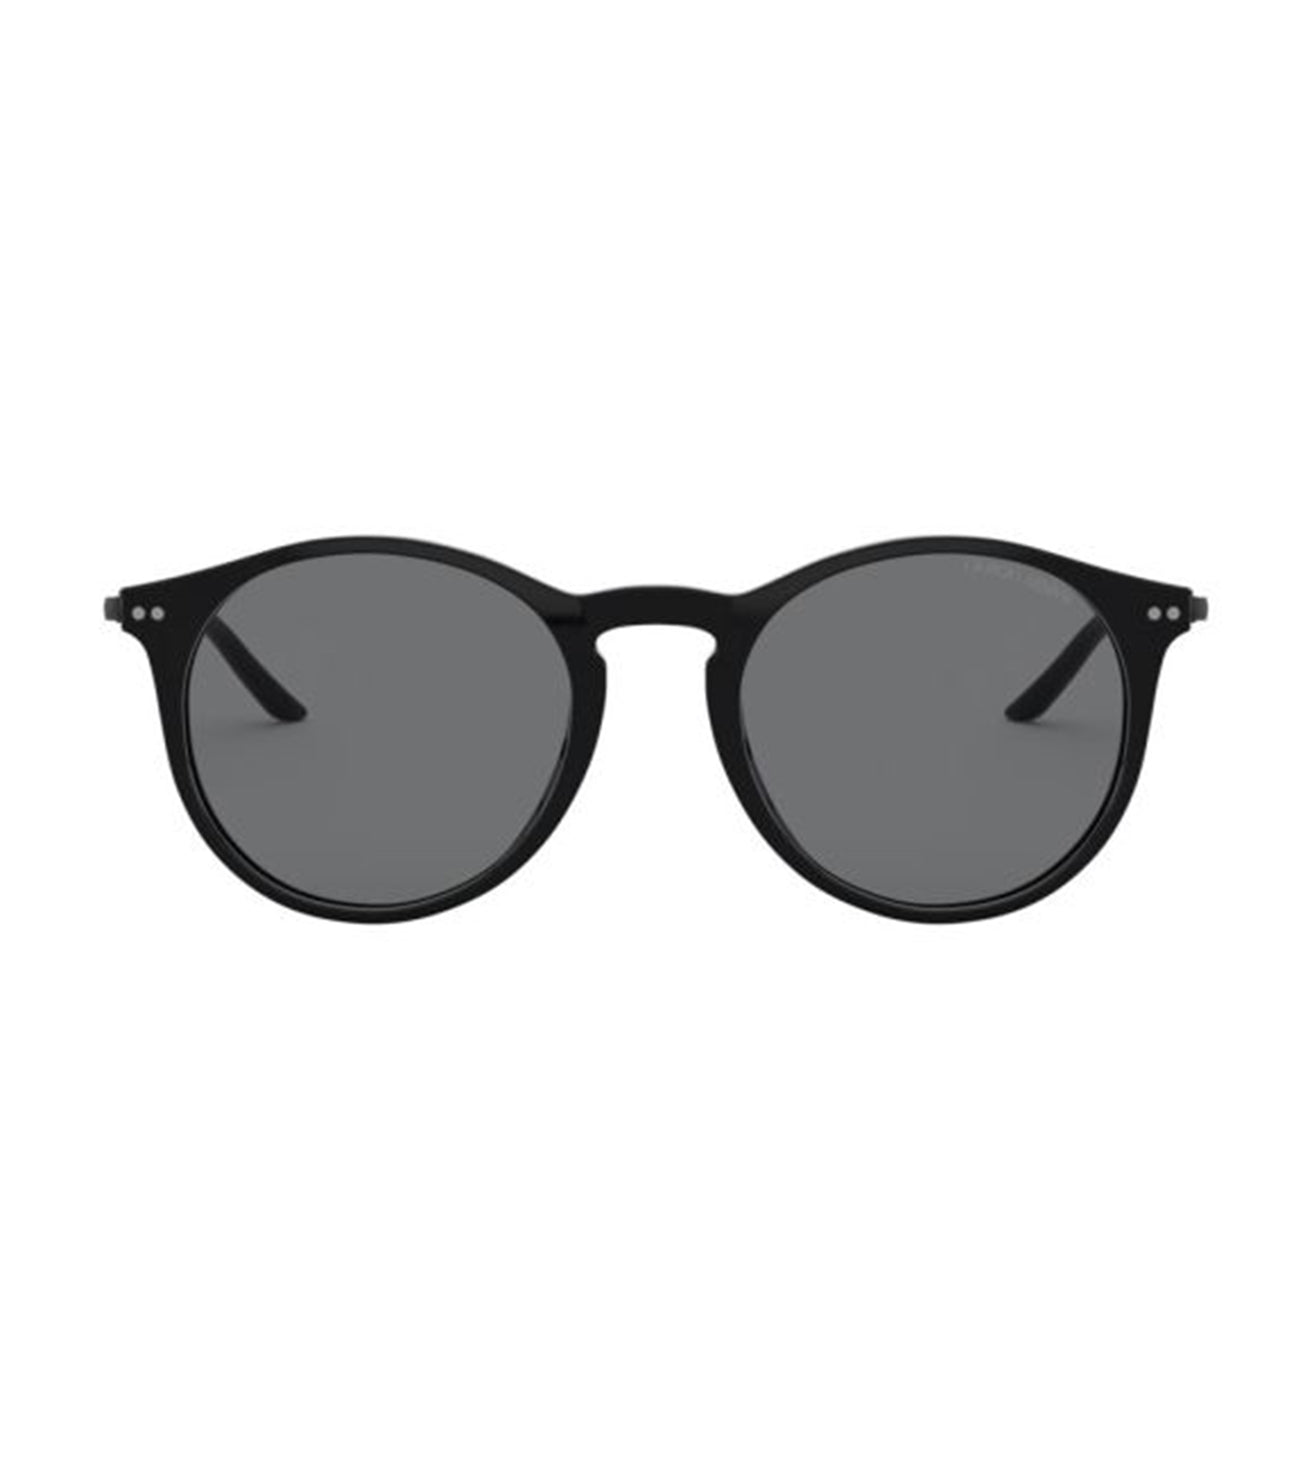 Giorgio Armani Men's Grey Round Sunglasses